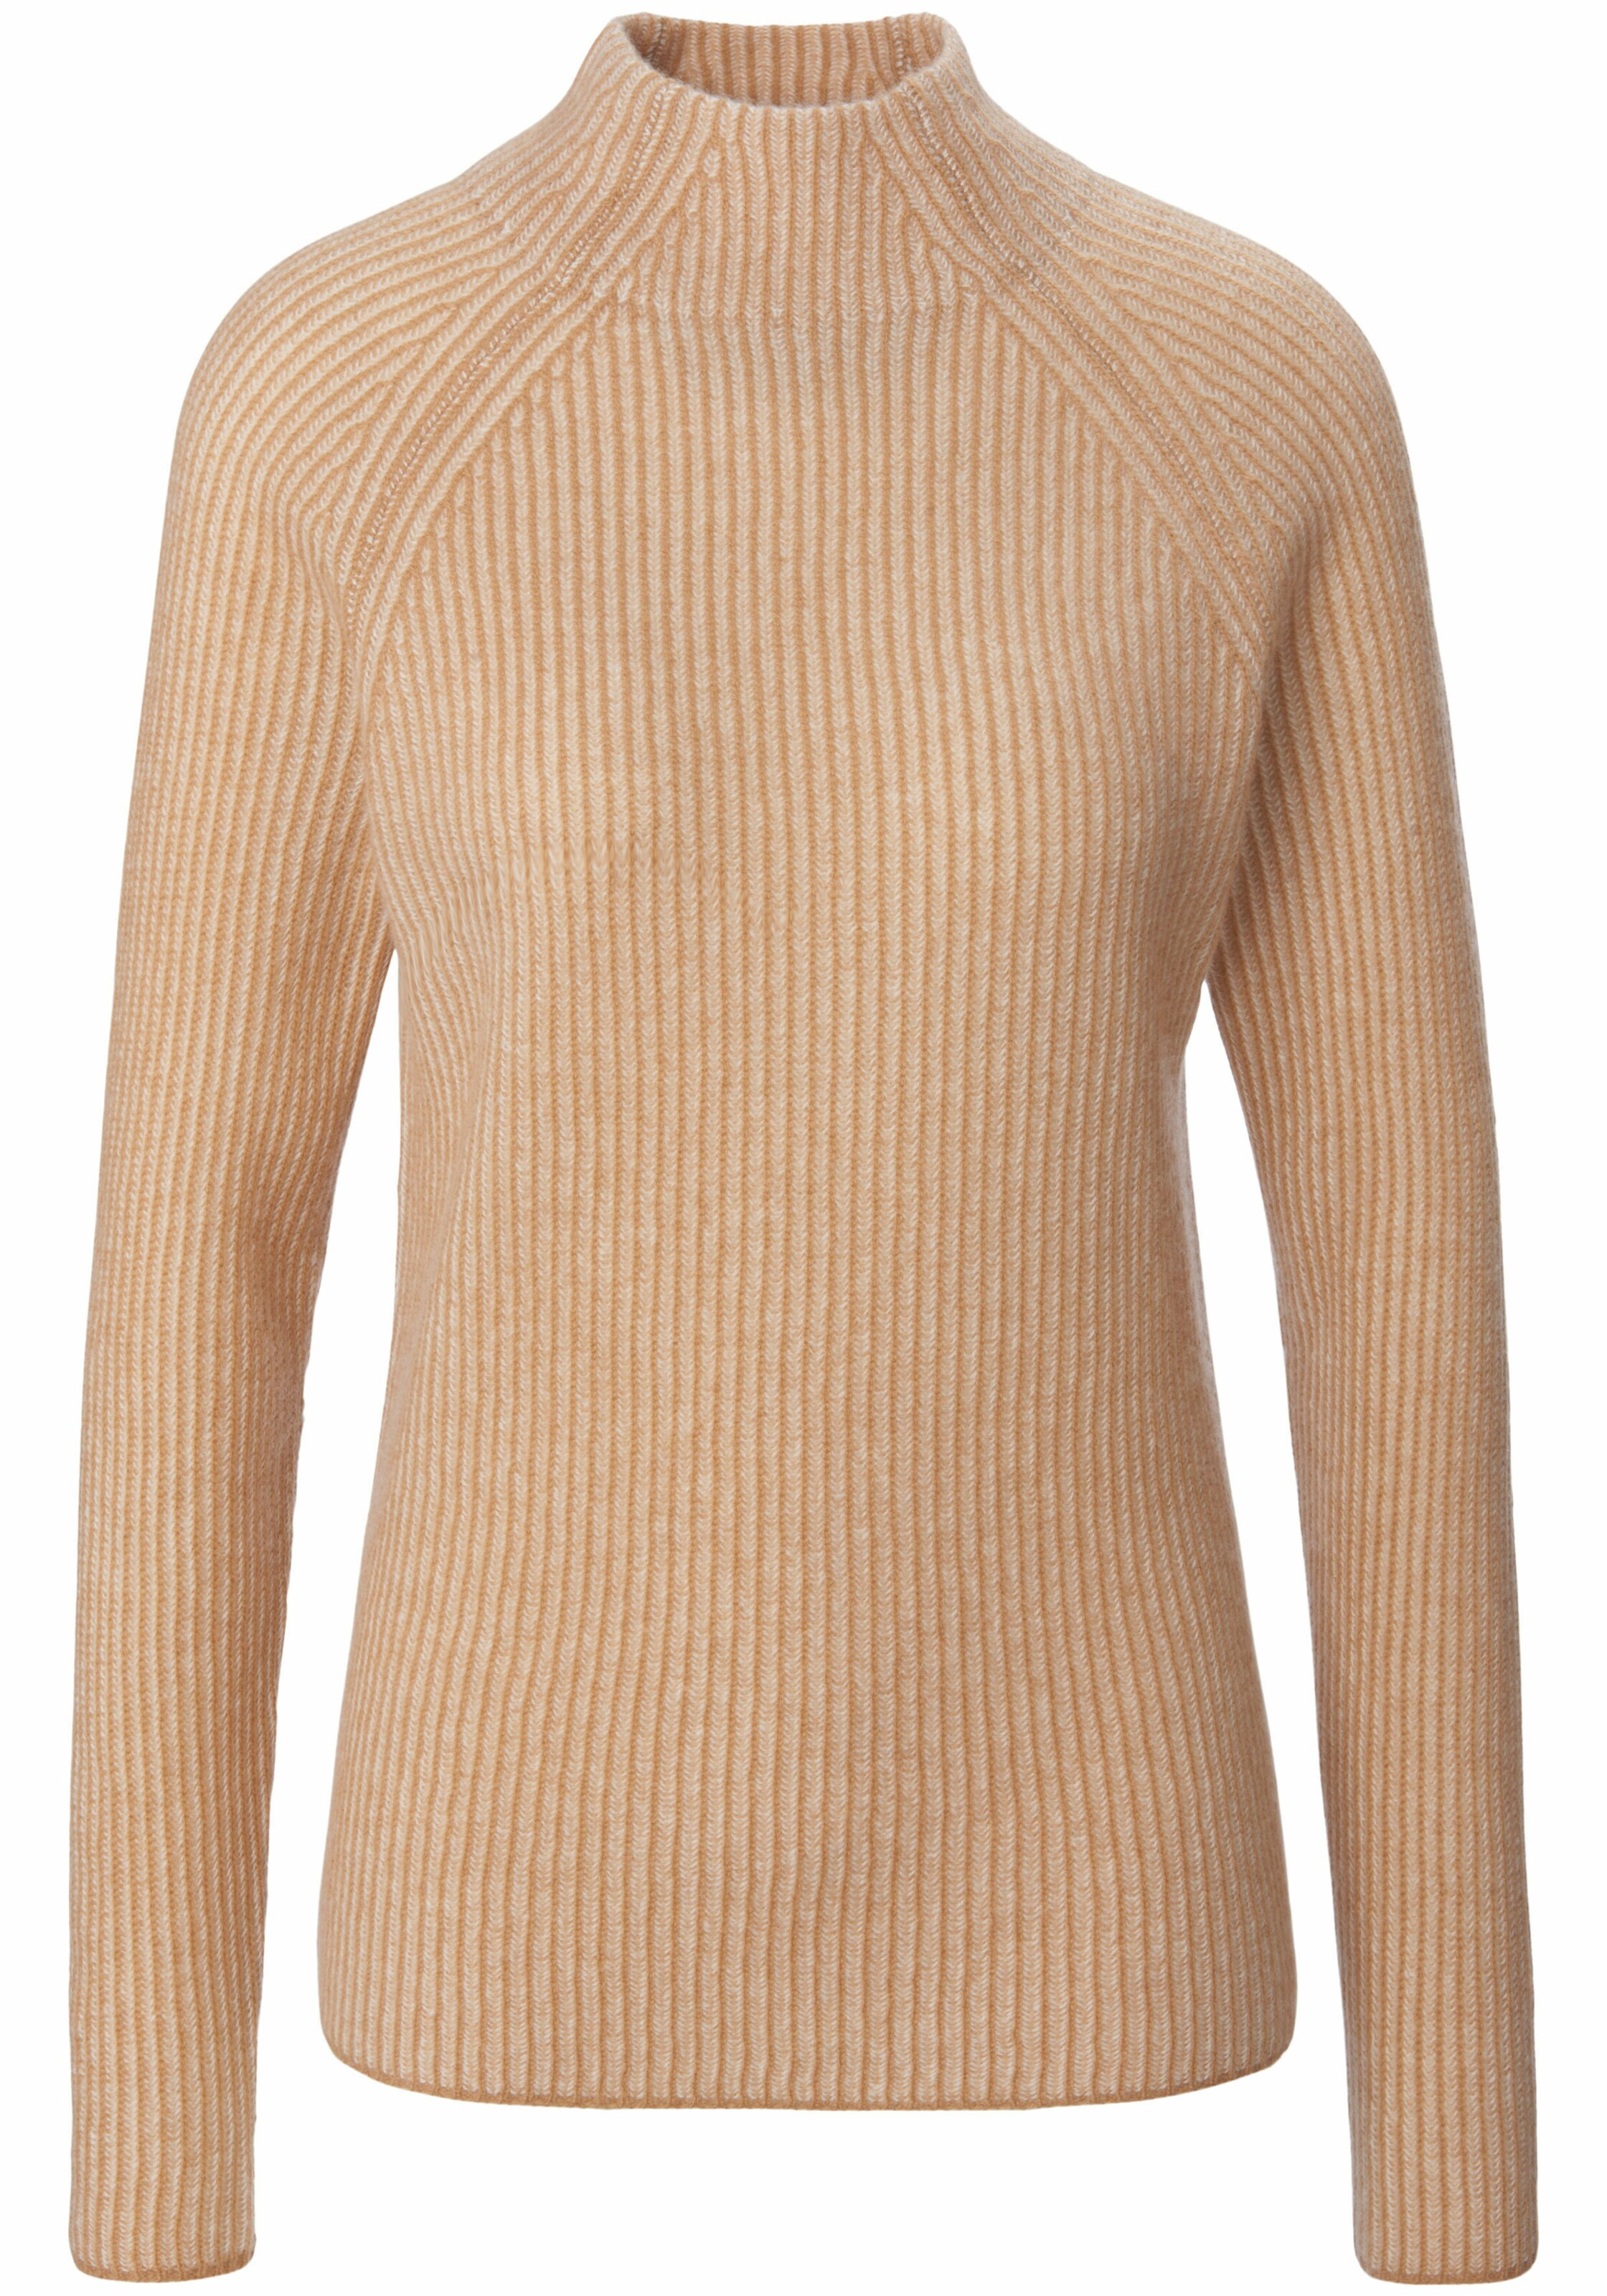 Frauen Große Größen include Pullover cashmere in Beige - PU06121